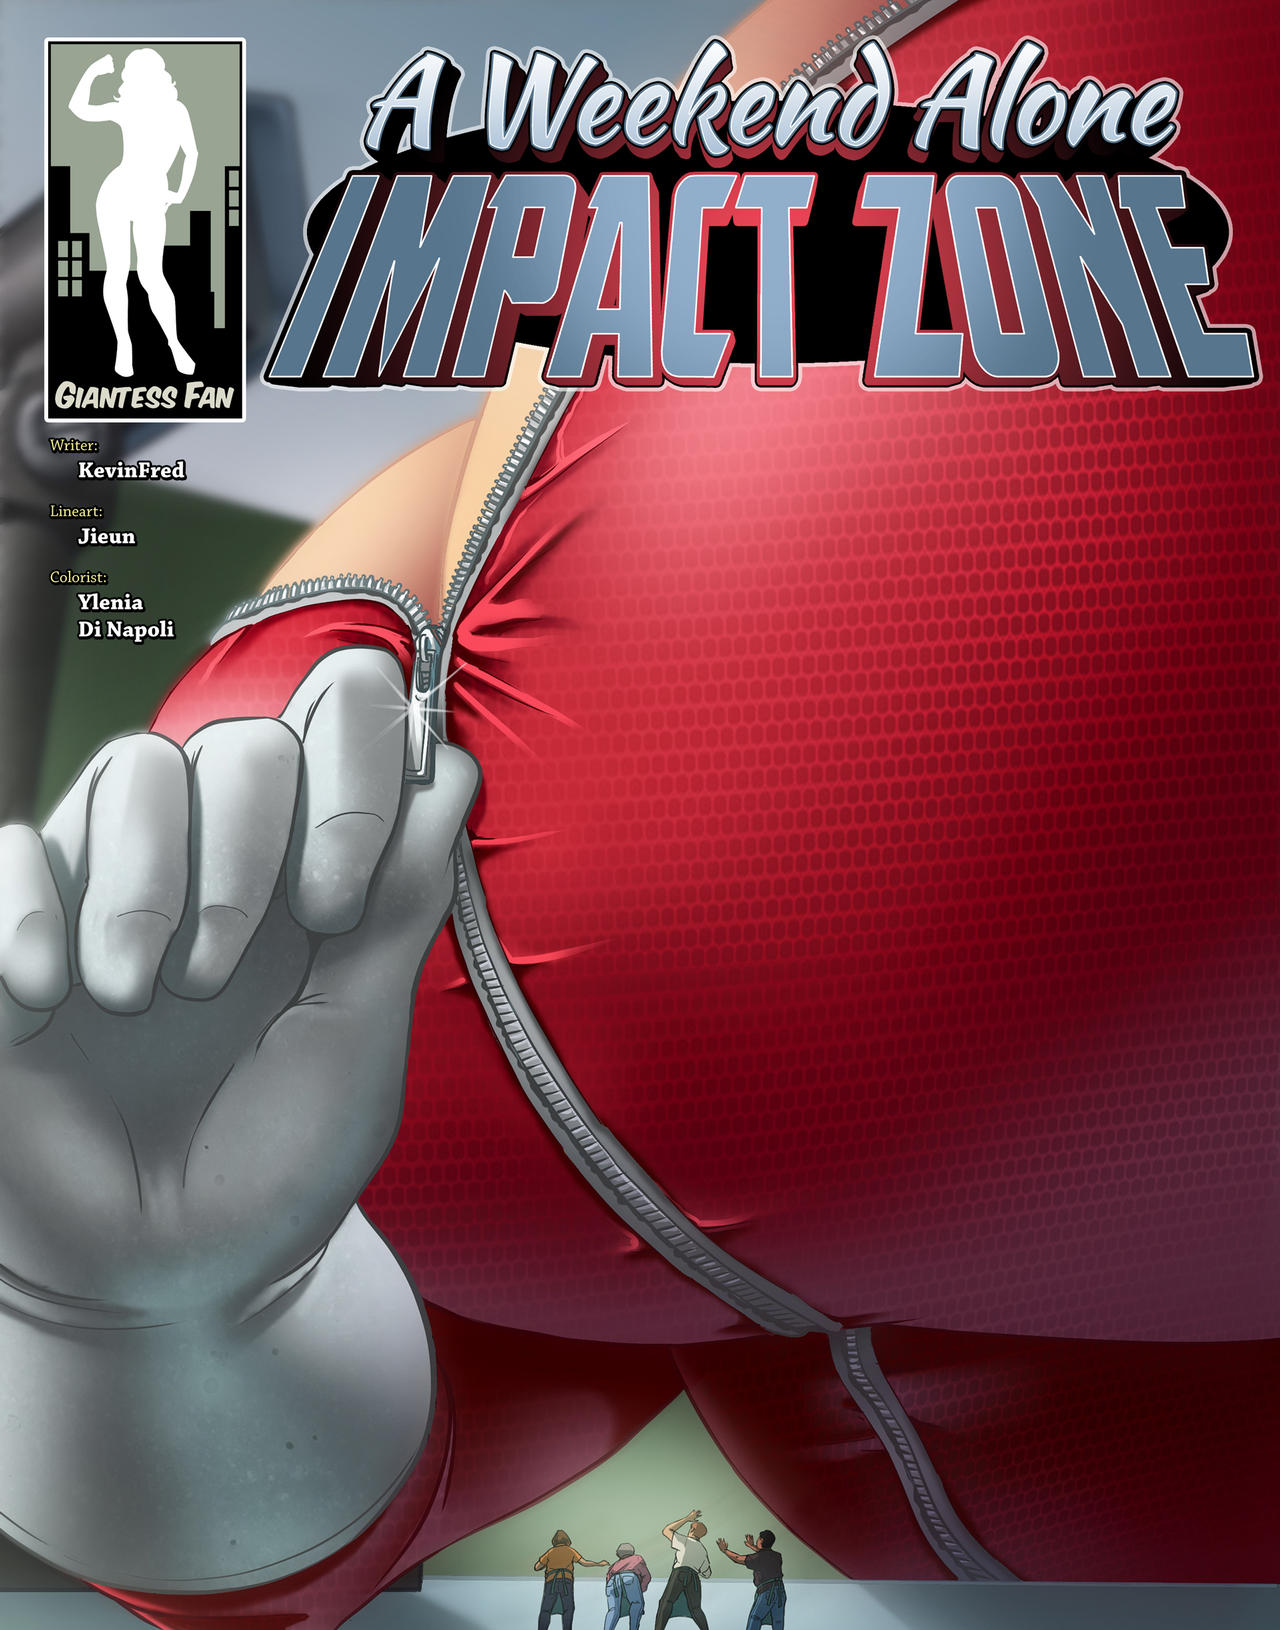 A Weekend Alone Impact Zone By Giantess Fan Comics On Deviantart from www.d...